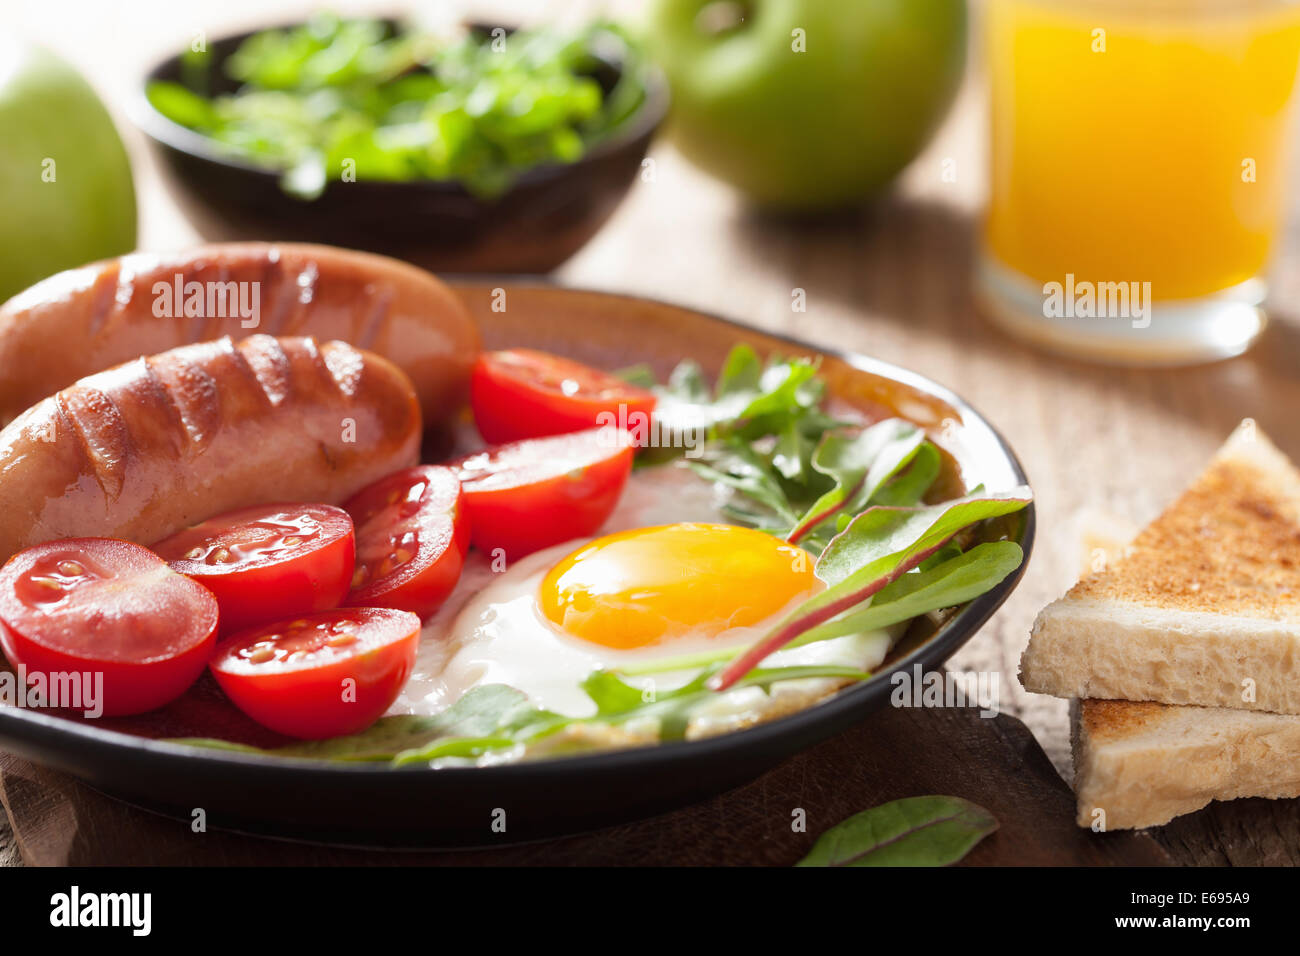 Spiegelei Würstchen Tomaten für gesundes Frühstück Stockfoto